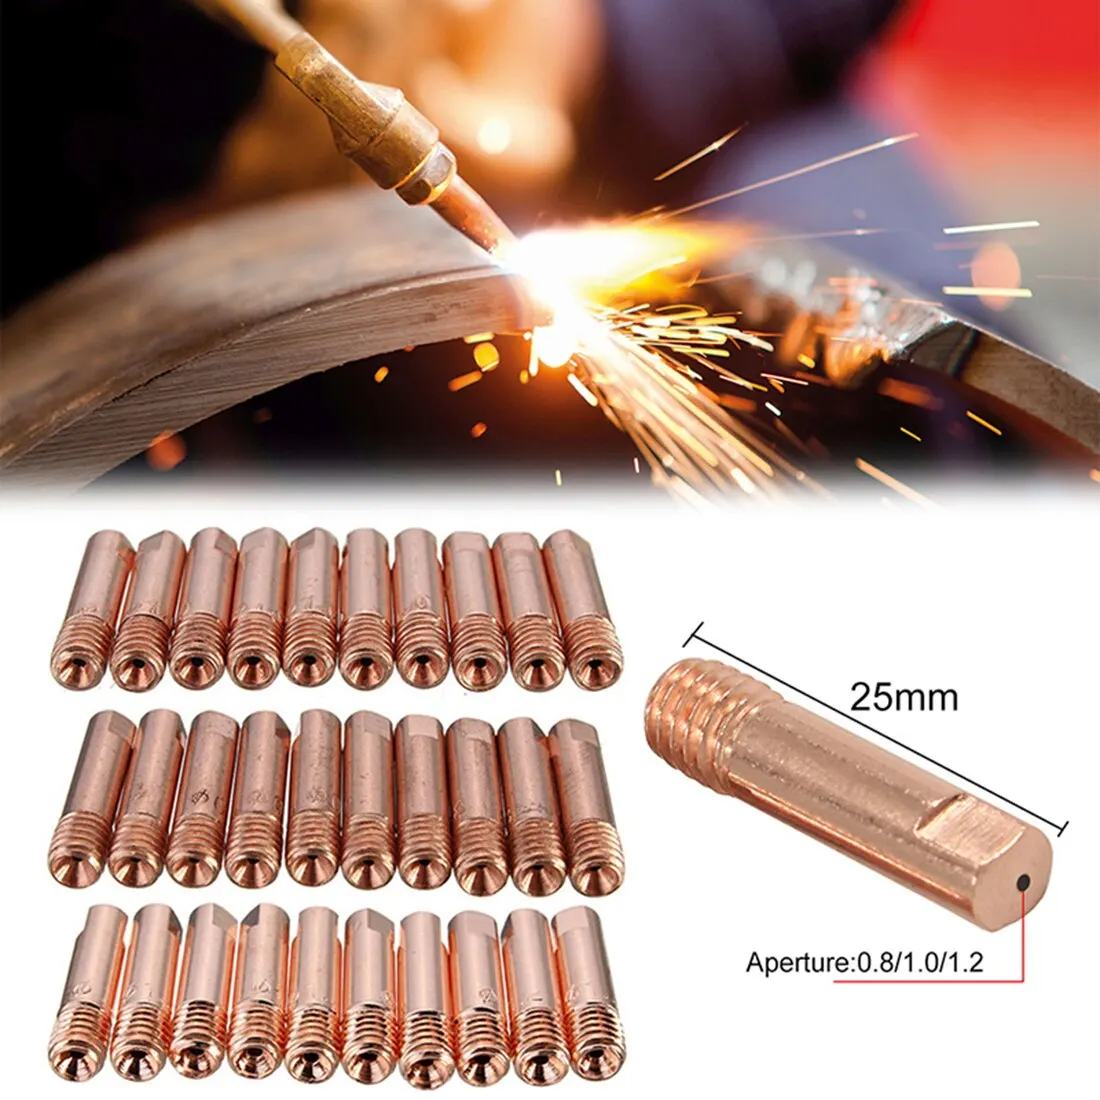 10pcs 15AK MB MIG//MAG Welding Torch Contact Tip 0.8 M6 x 24mm Copper Gas Nozzle